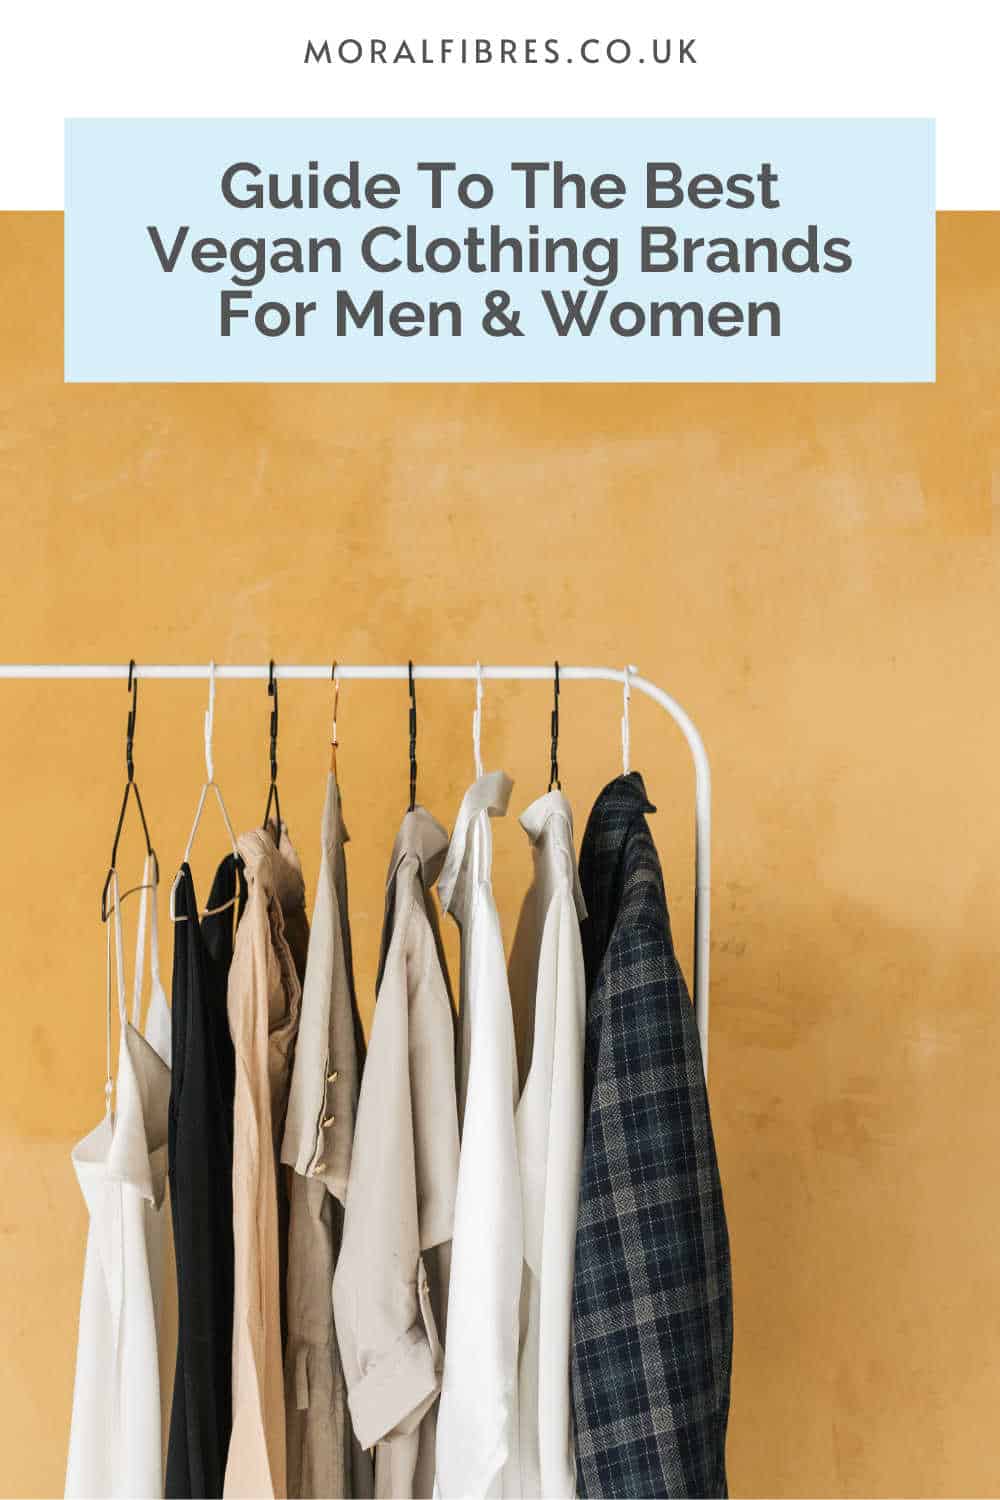 Rails EU: A Contemporary Clothing Brand For Men & Women